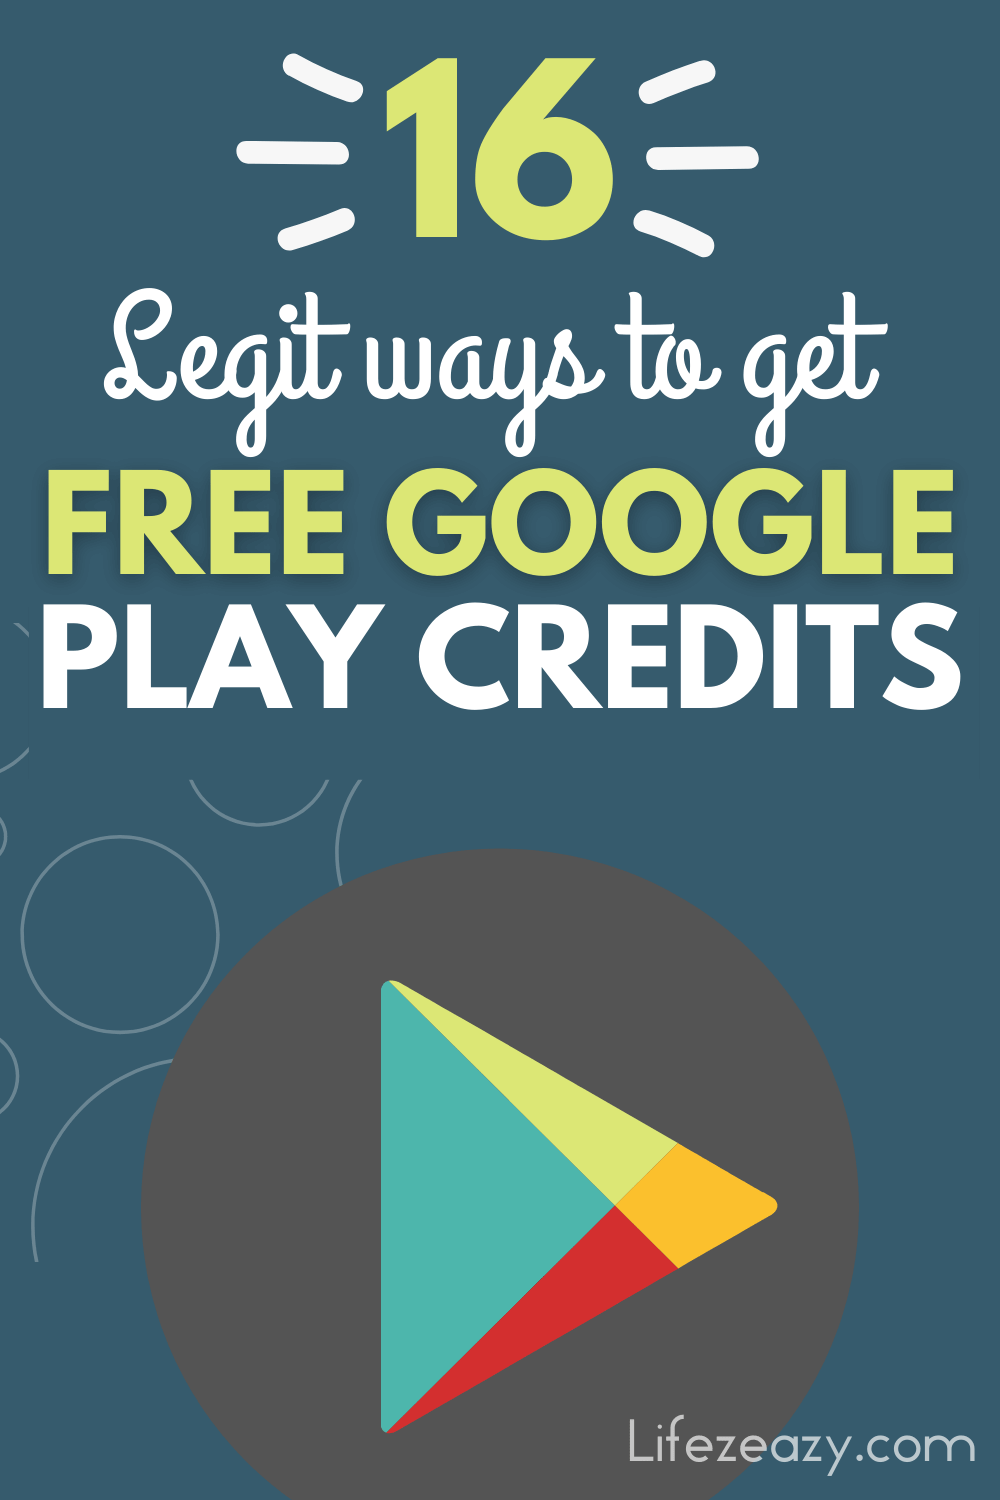 Free Google Play credits